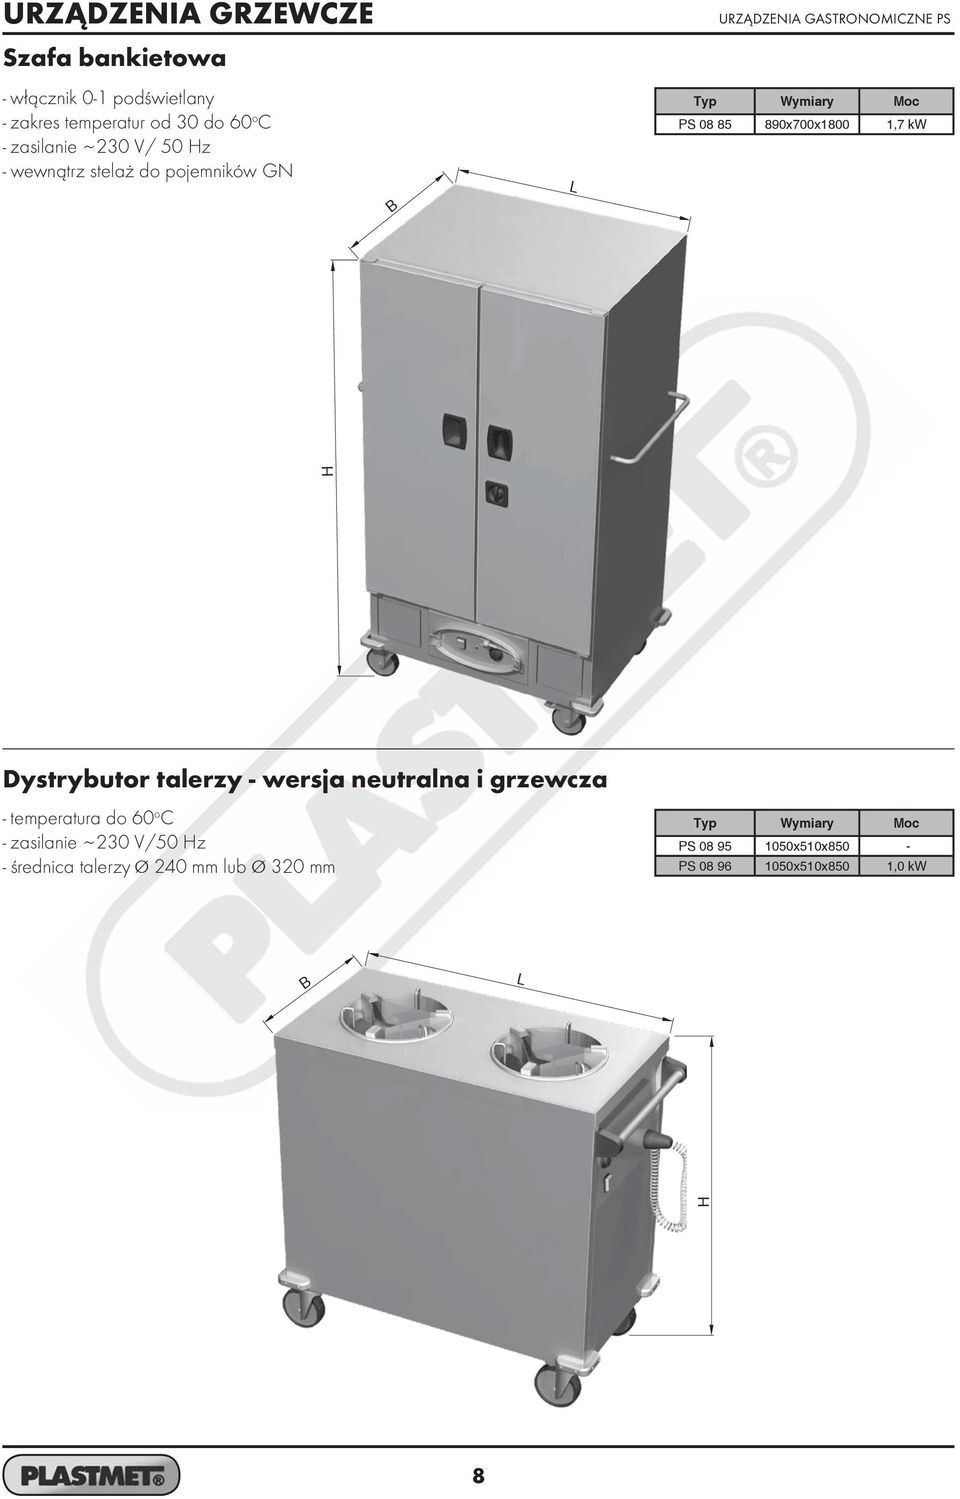 Dystrybutor talerzy - wersja neutralna i grzewcza - temperatura do 60 o C - zasilanie ~ 230 V/50 z -